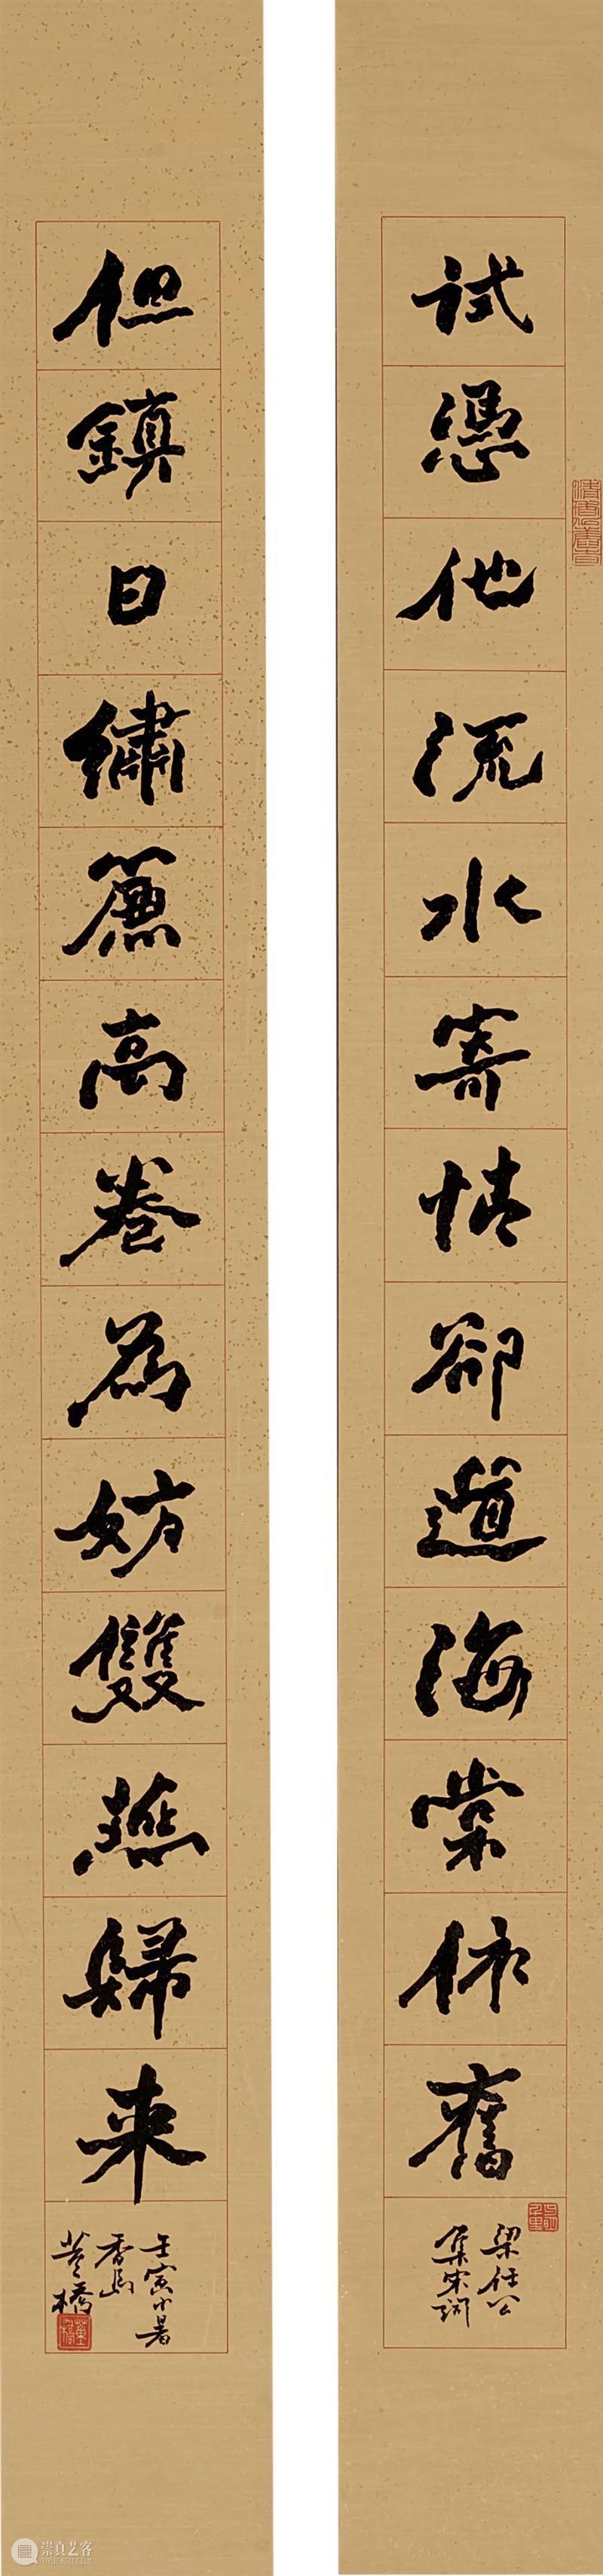 【八月重点推荐】清平乐 ─ 中国书画网上拍卖 崇真艺客